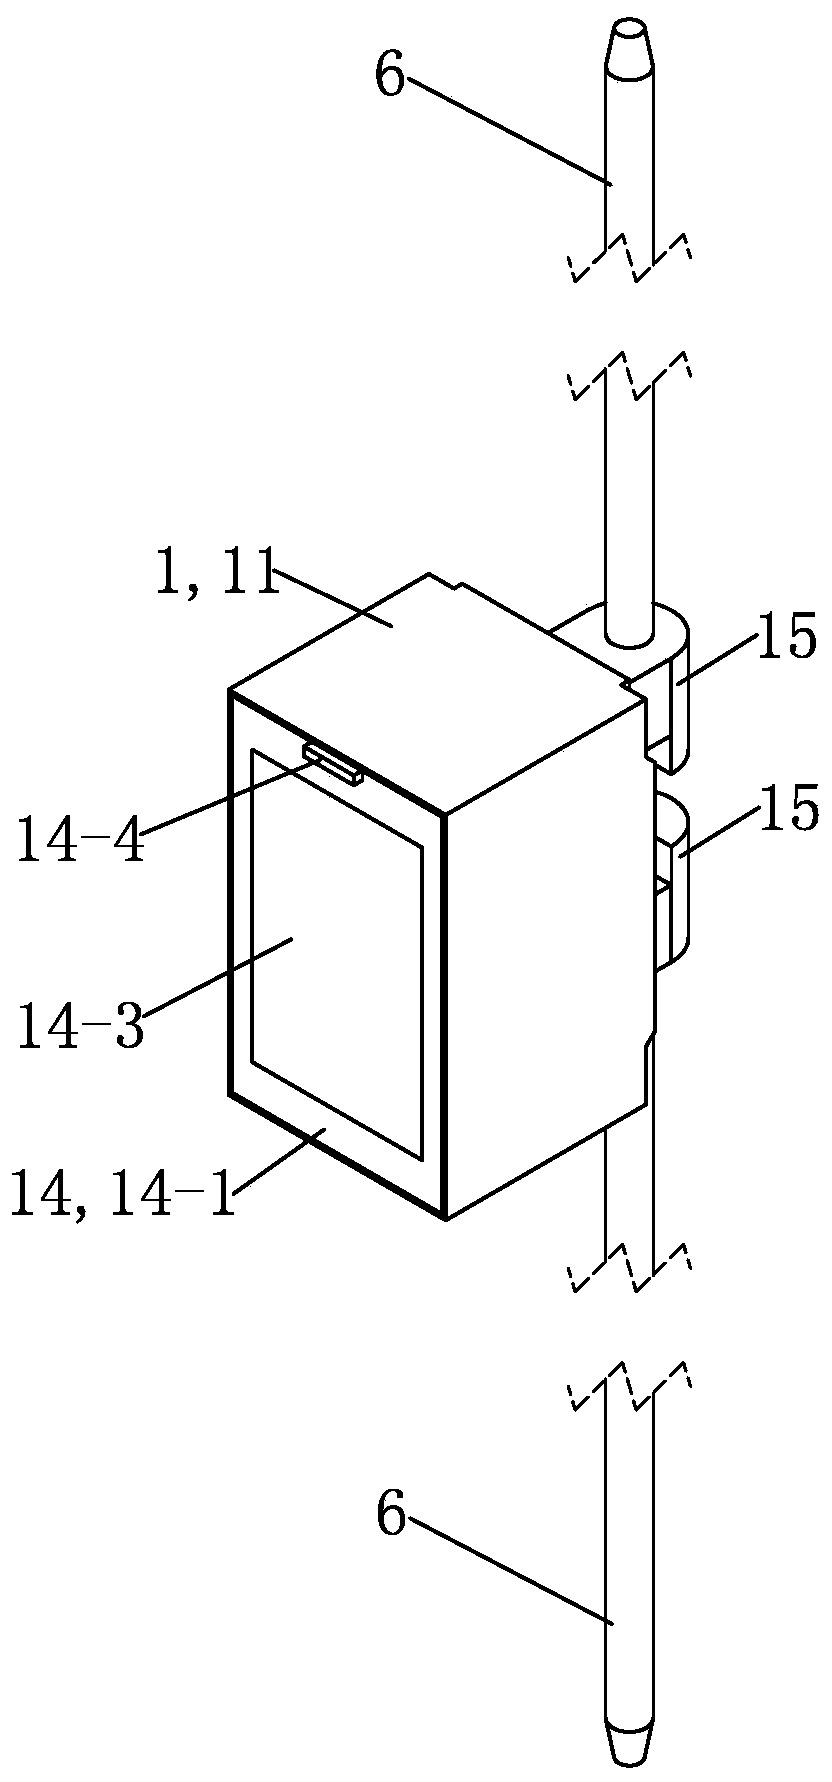 Door lock structure of push-pull type ring main unit